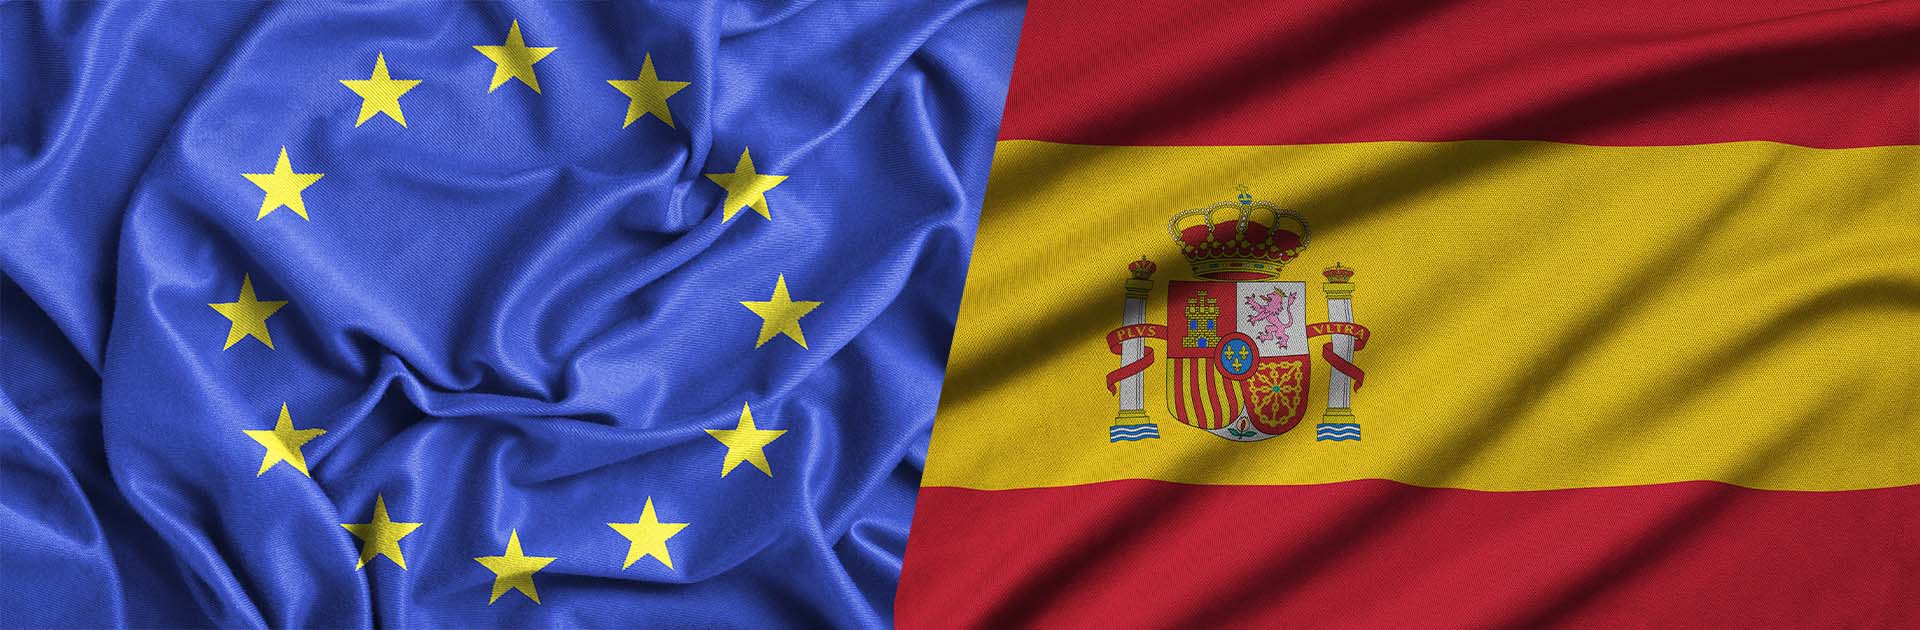 Presidencia Española del Consejo de la UE, Banderas de la Unión Europea y de España